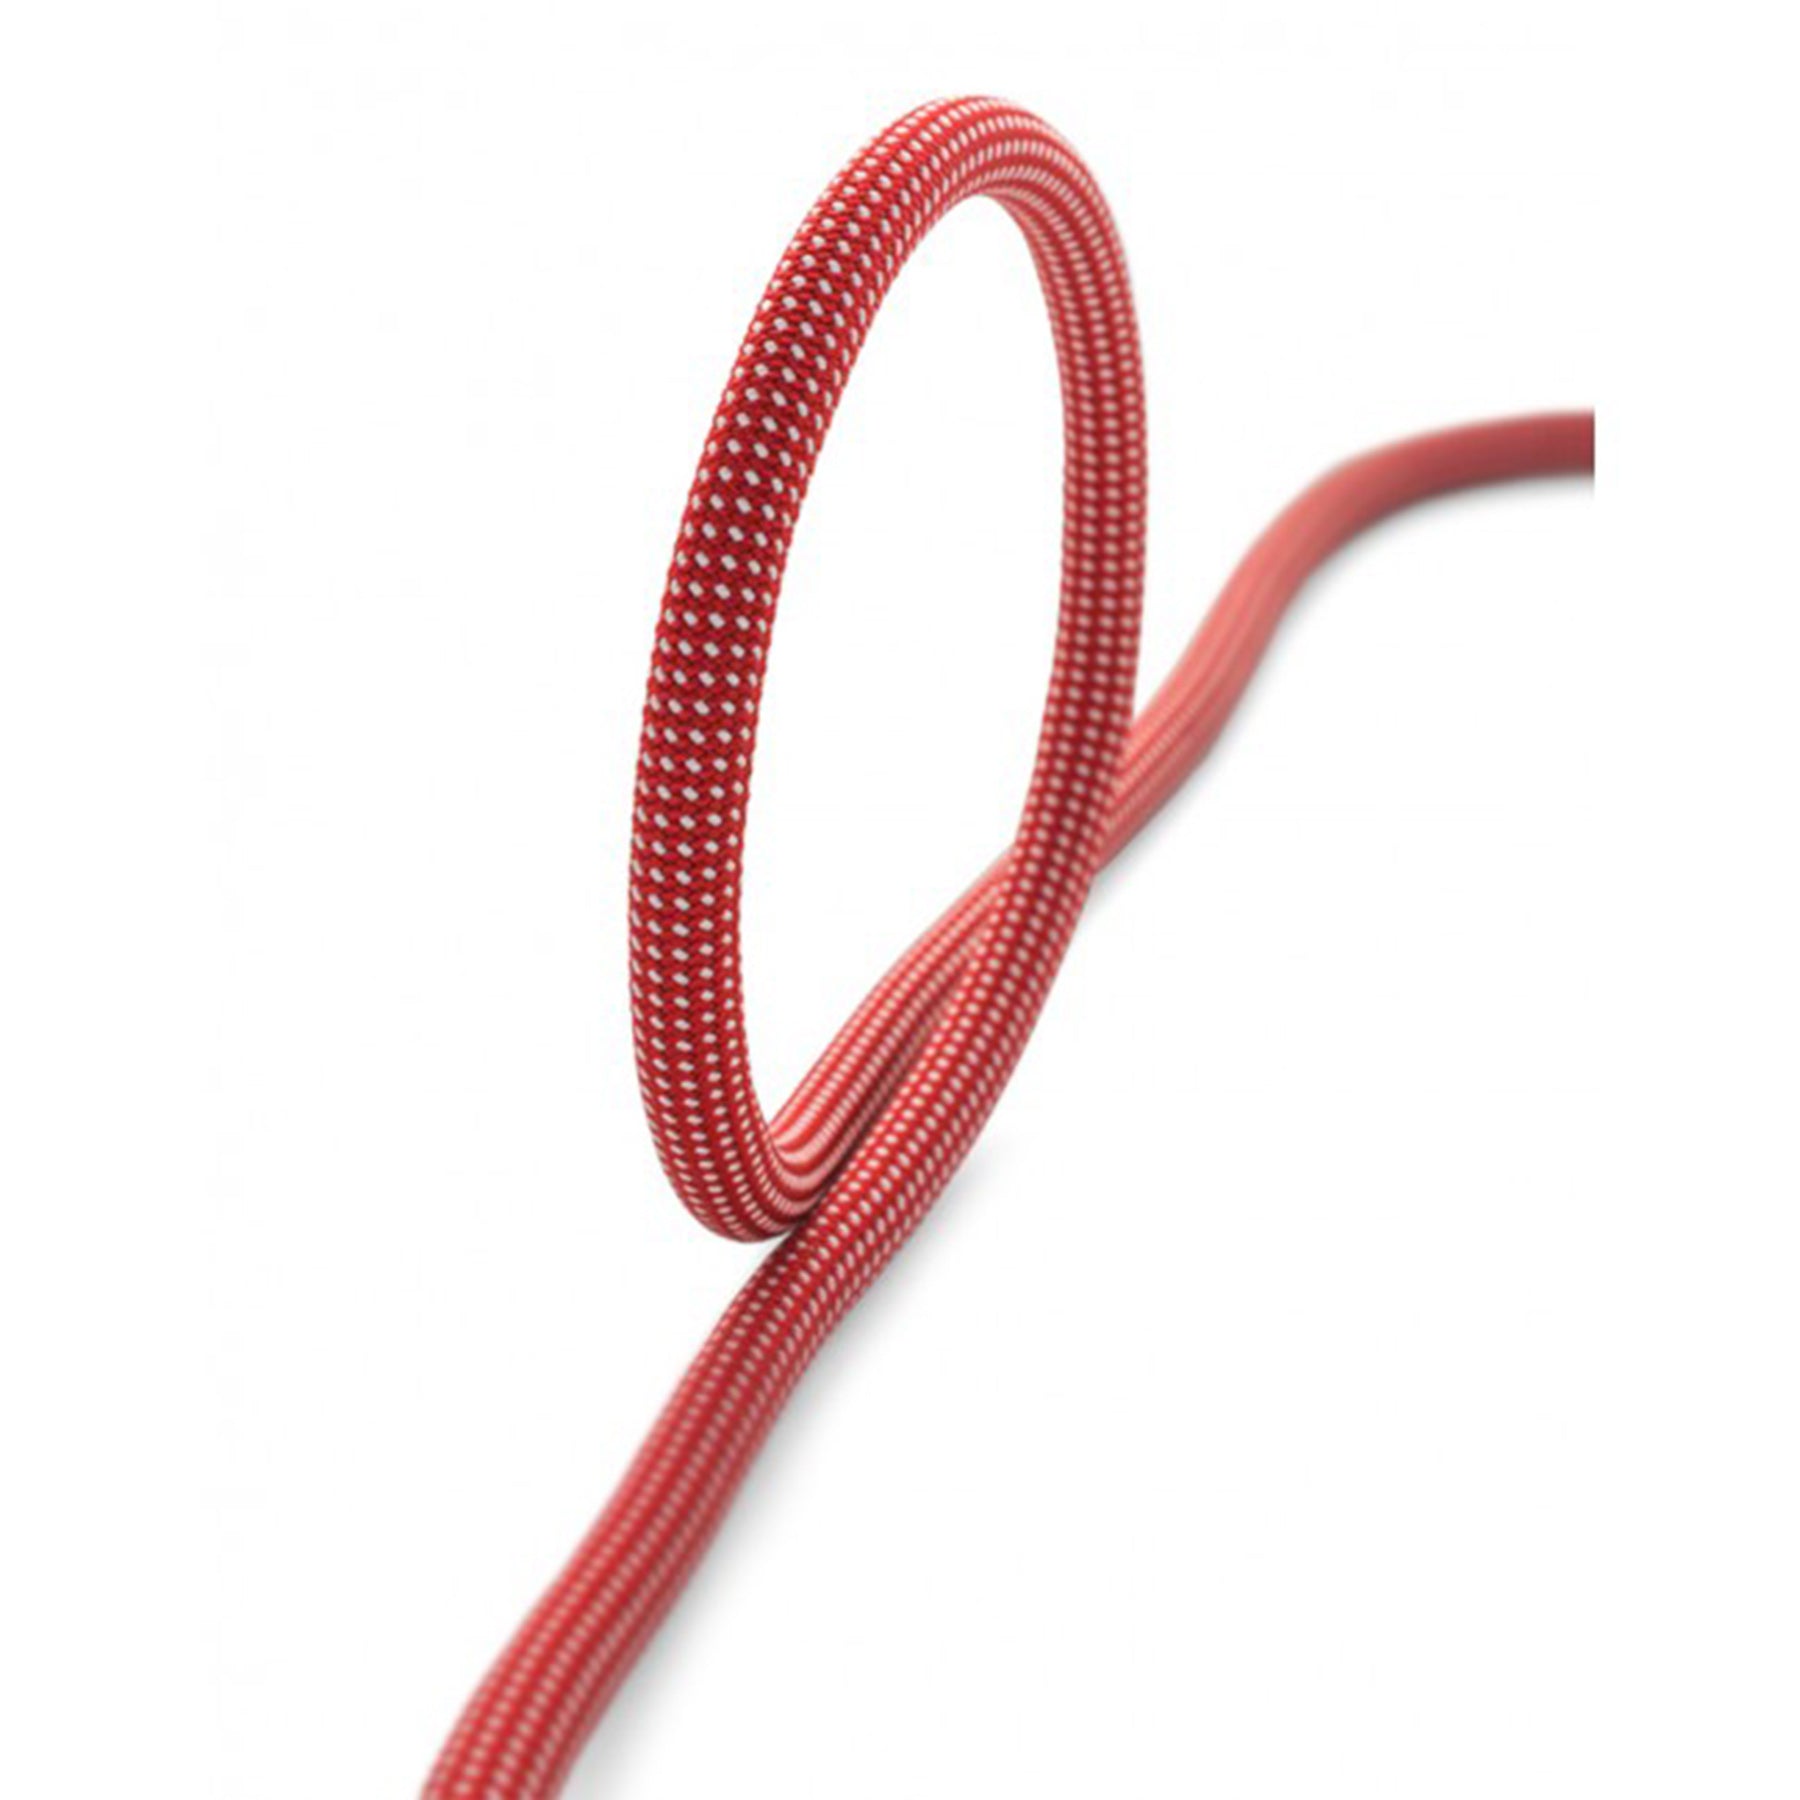 a loop of siurana rope showing it's loop radius as 3" or so